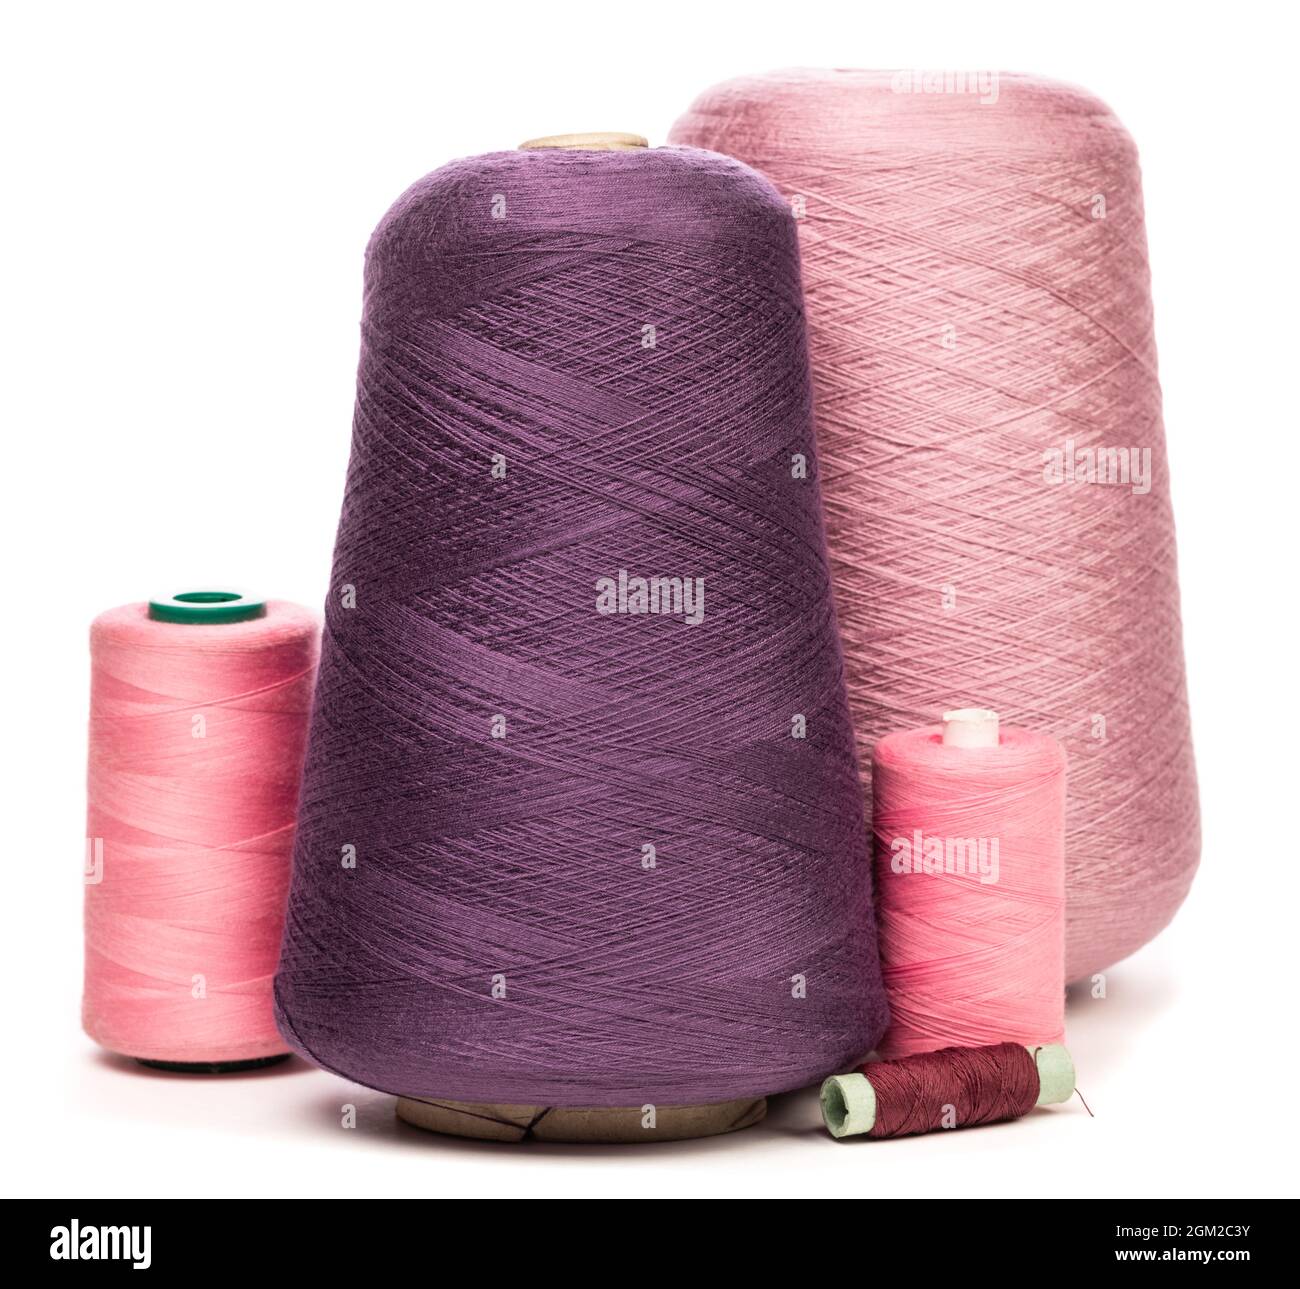 Gruppo di coni e rocchetti di fili rosa viola e viola sintetici o di cotone su sfondo bianco utilizzati per la tessitura nella produzione tessile Foto Stock